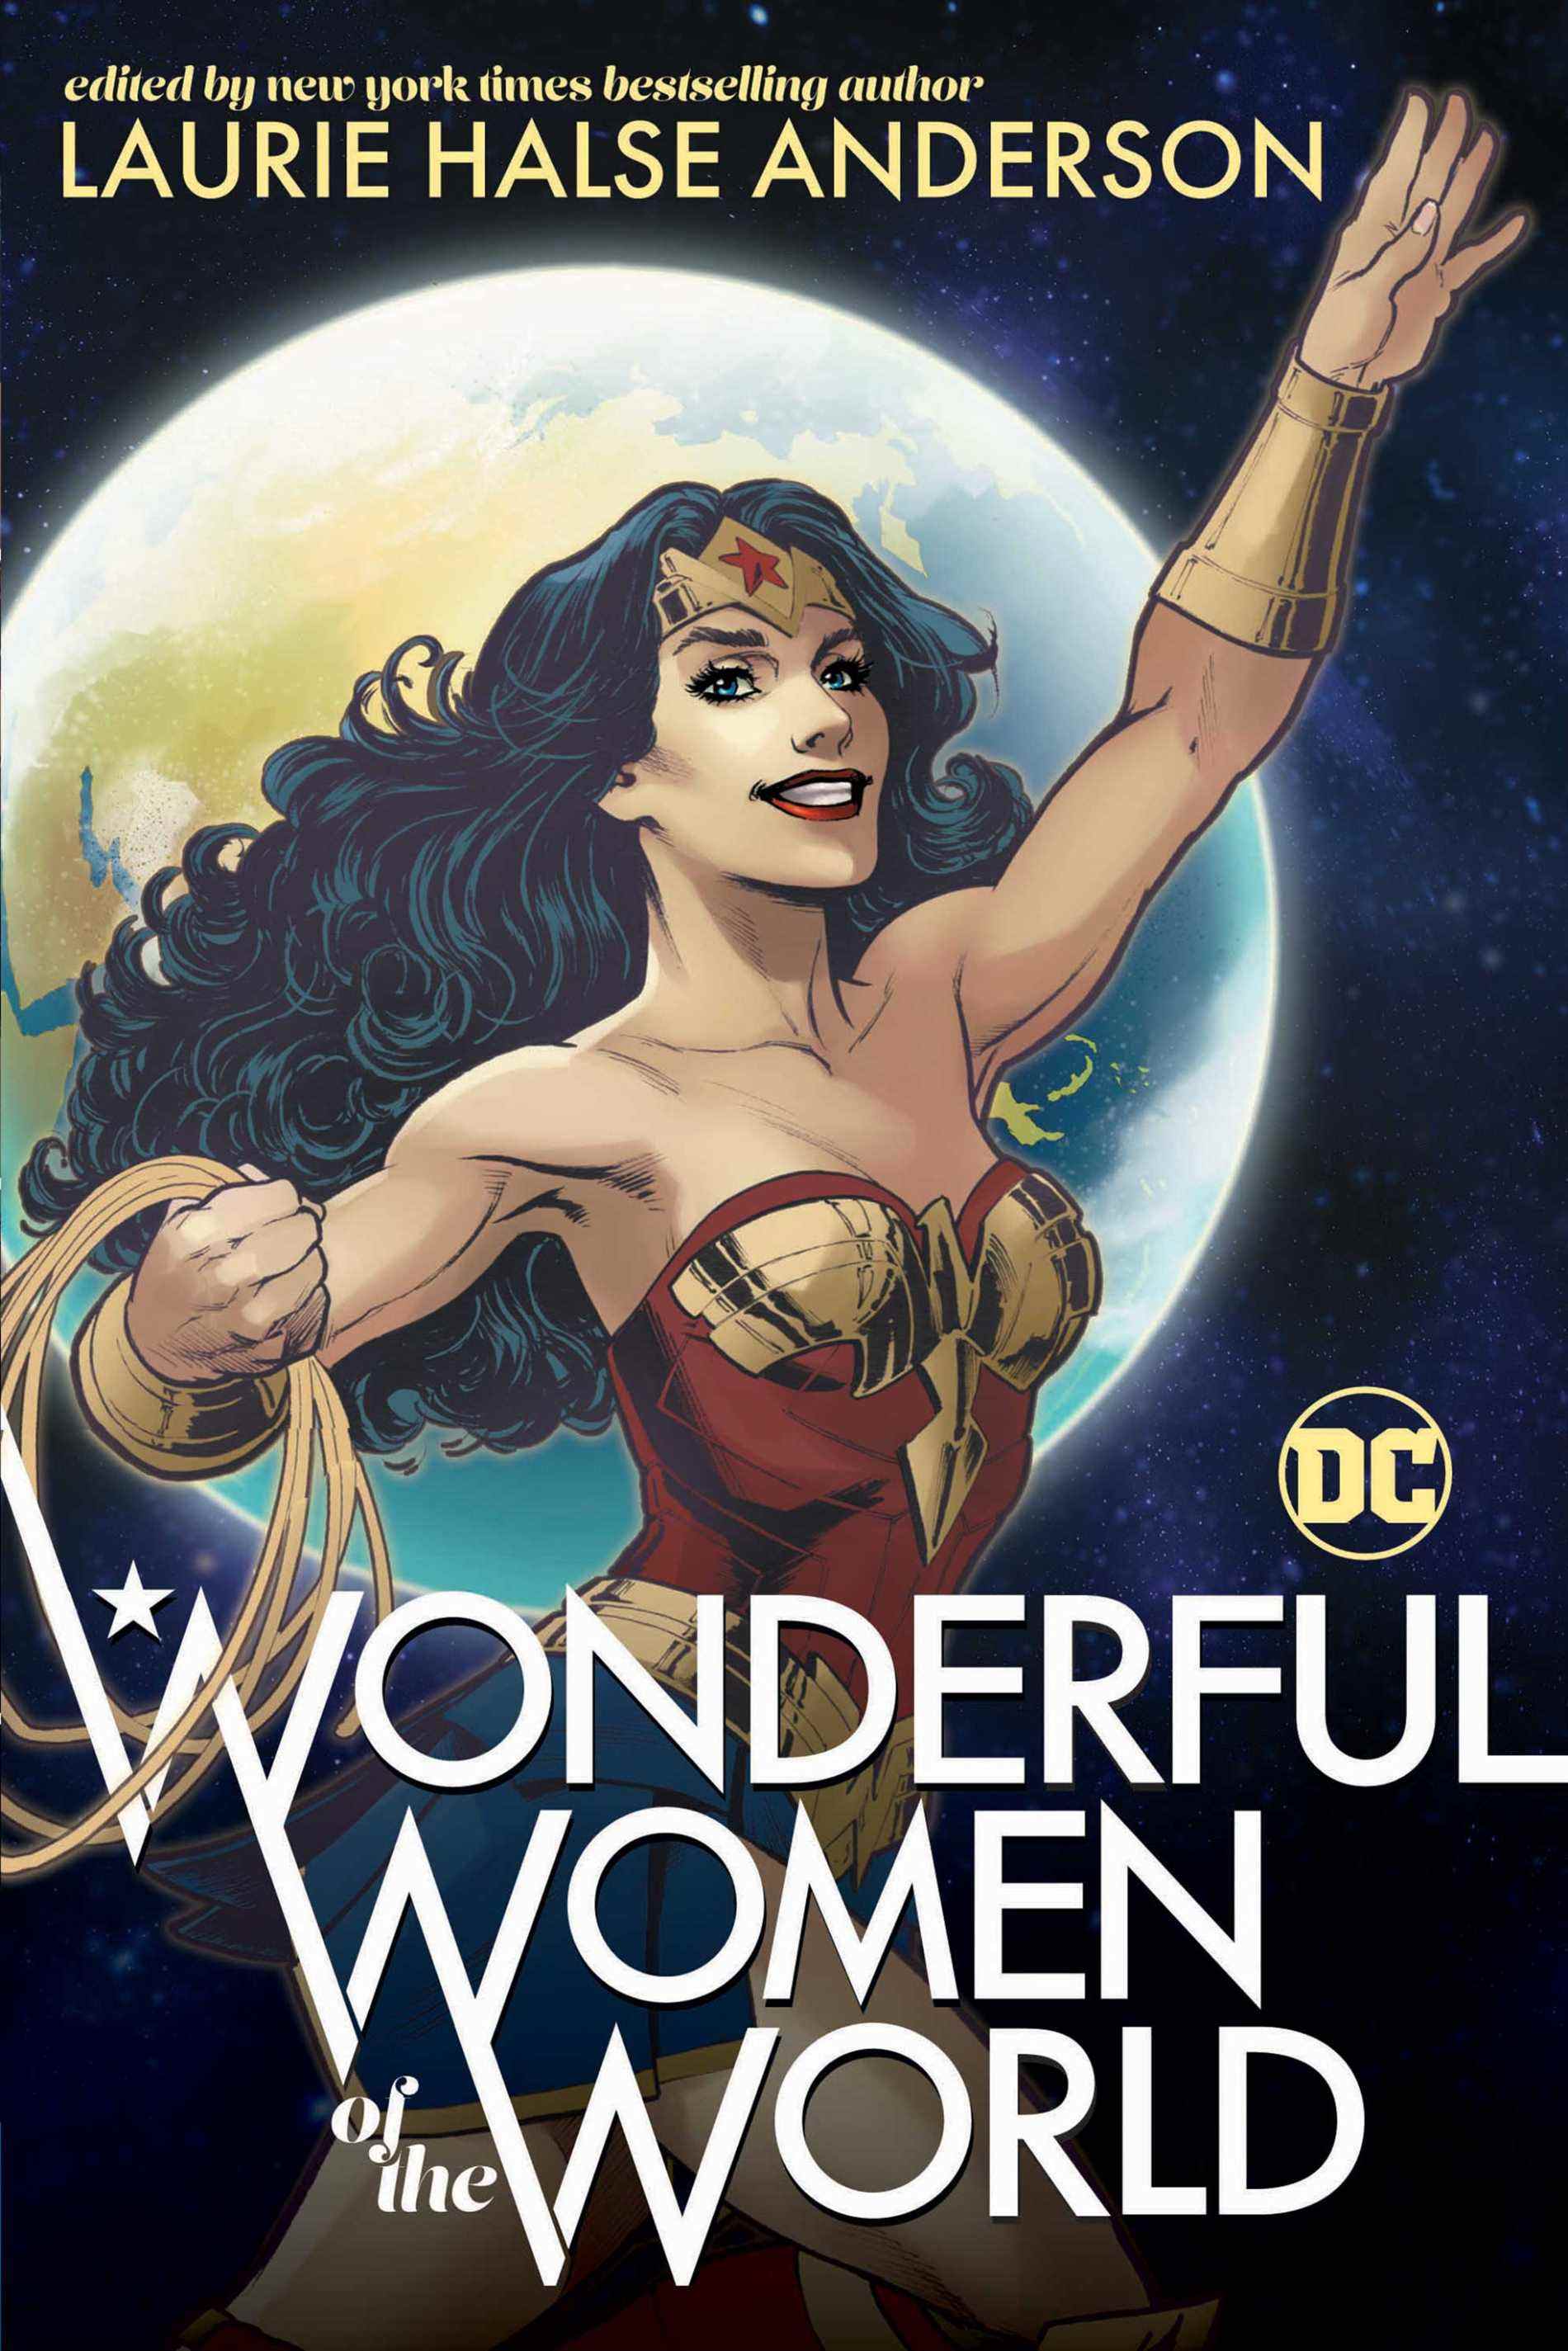 Titre du 80e anniversaire de Wonder Woman